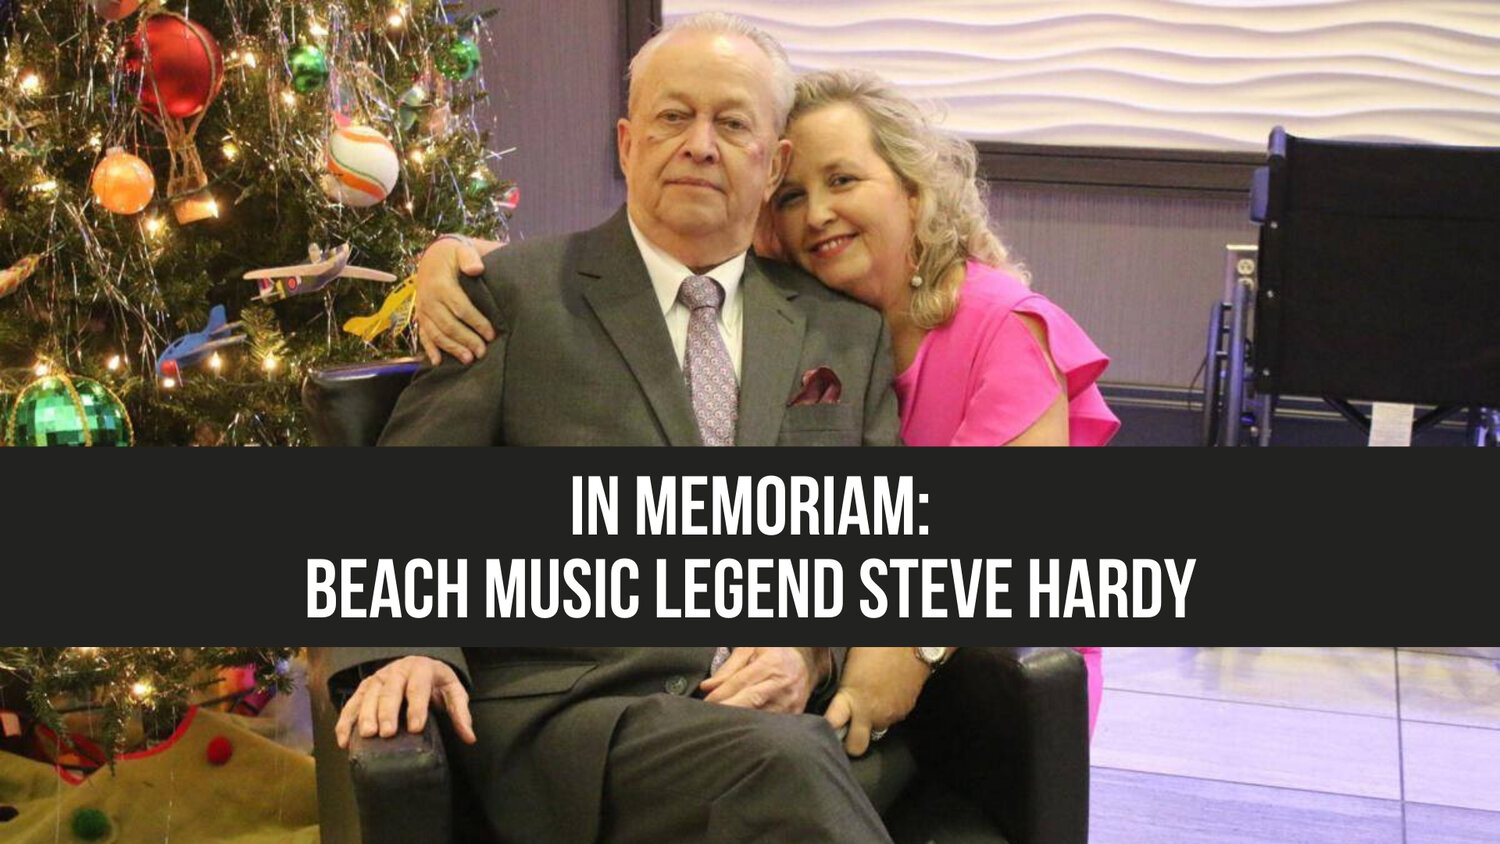 In Memoriam: Beach music legend Steve Hardy